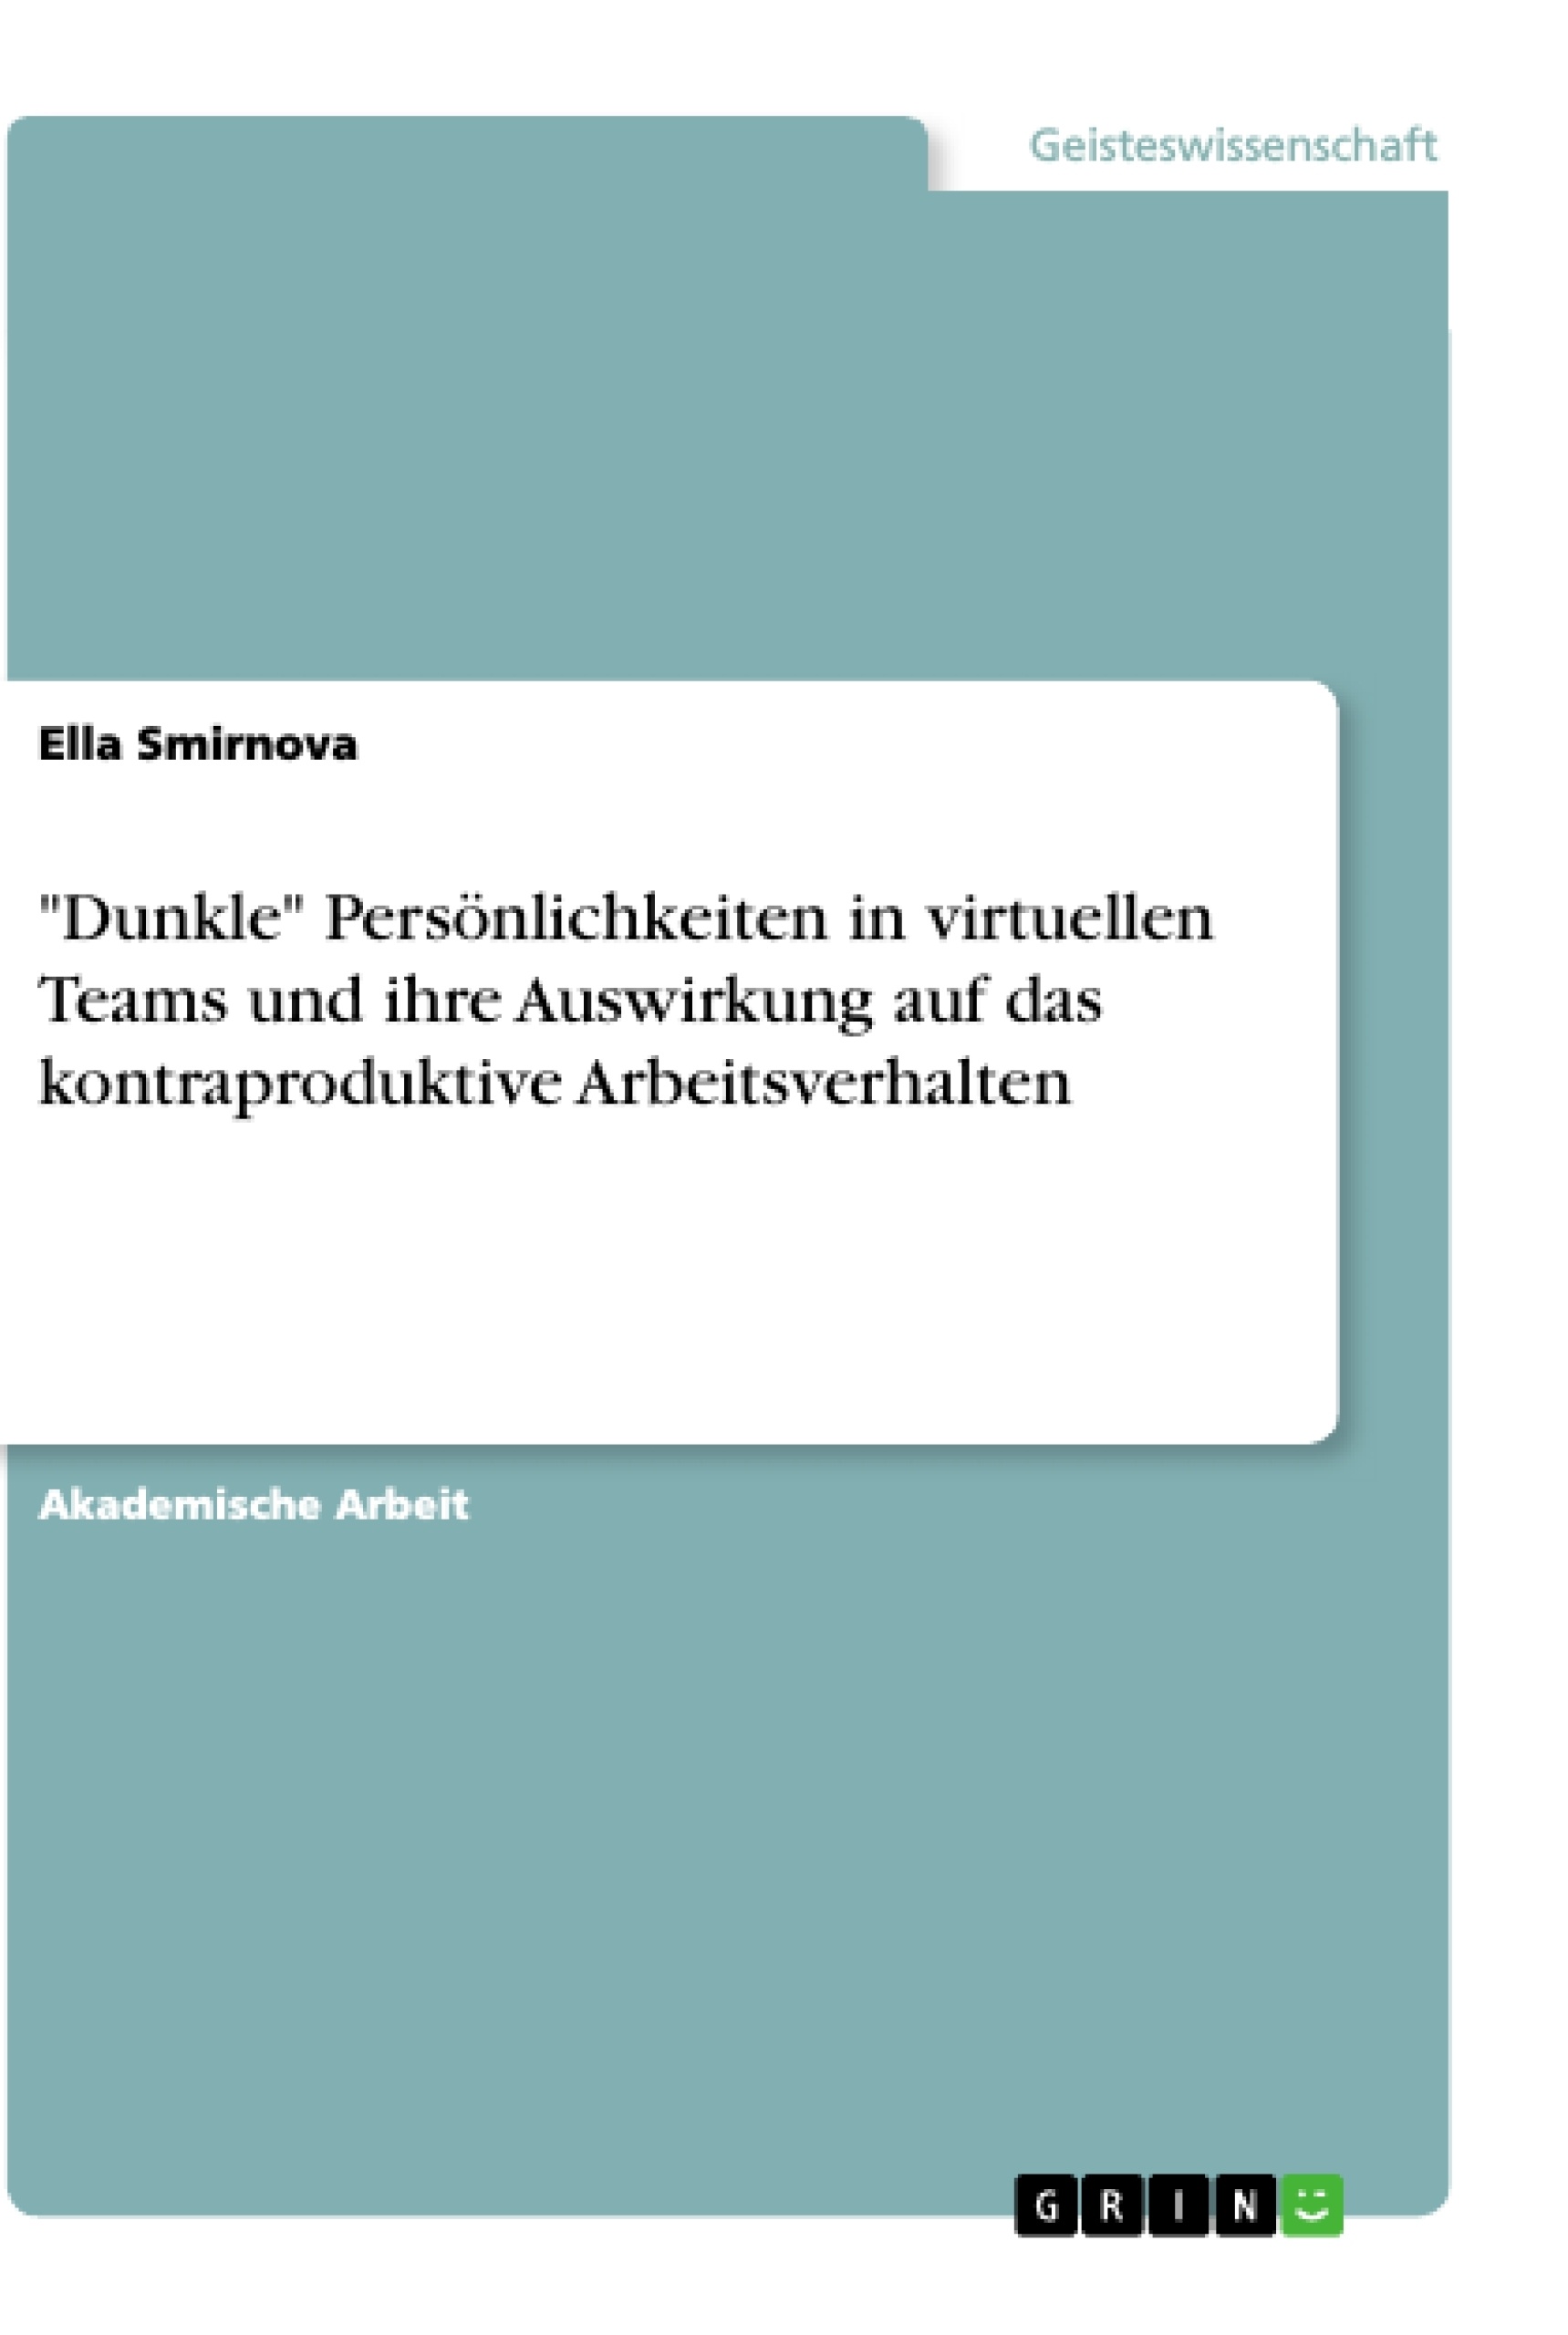 Title: "Dunkle" Persönlichkeiten in virtuellen Teams und ihre Auswirkung auf das kontraproduktive Arbeitsverhalten